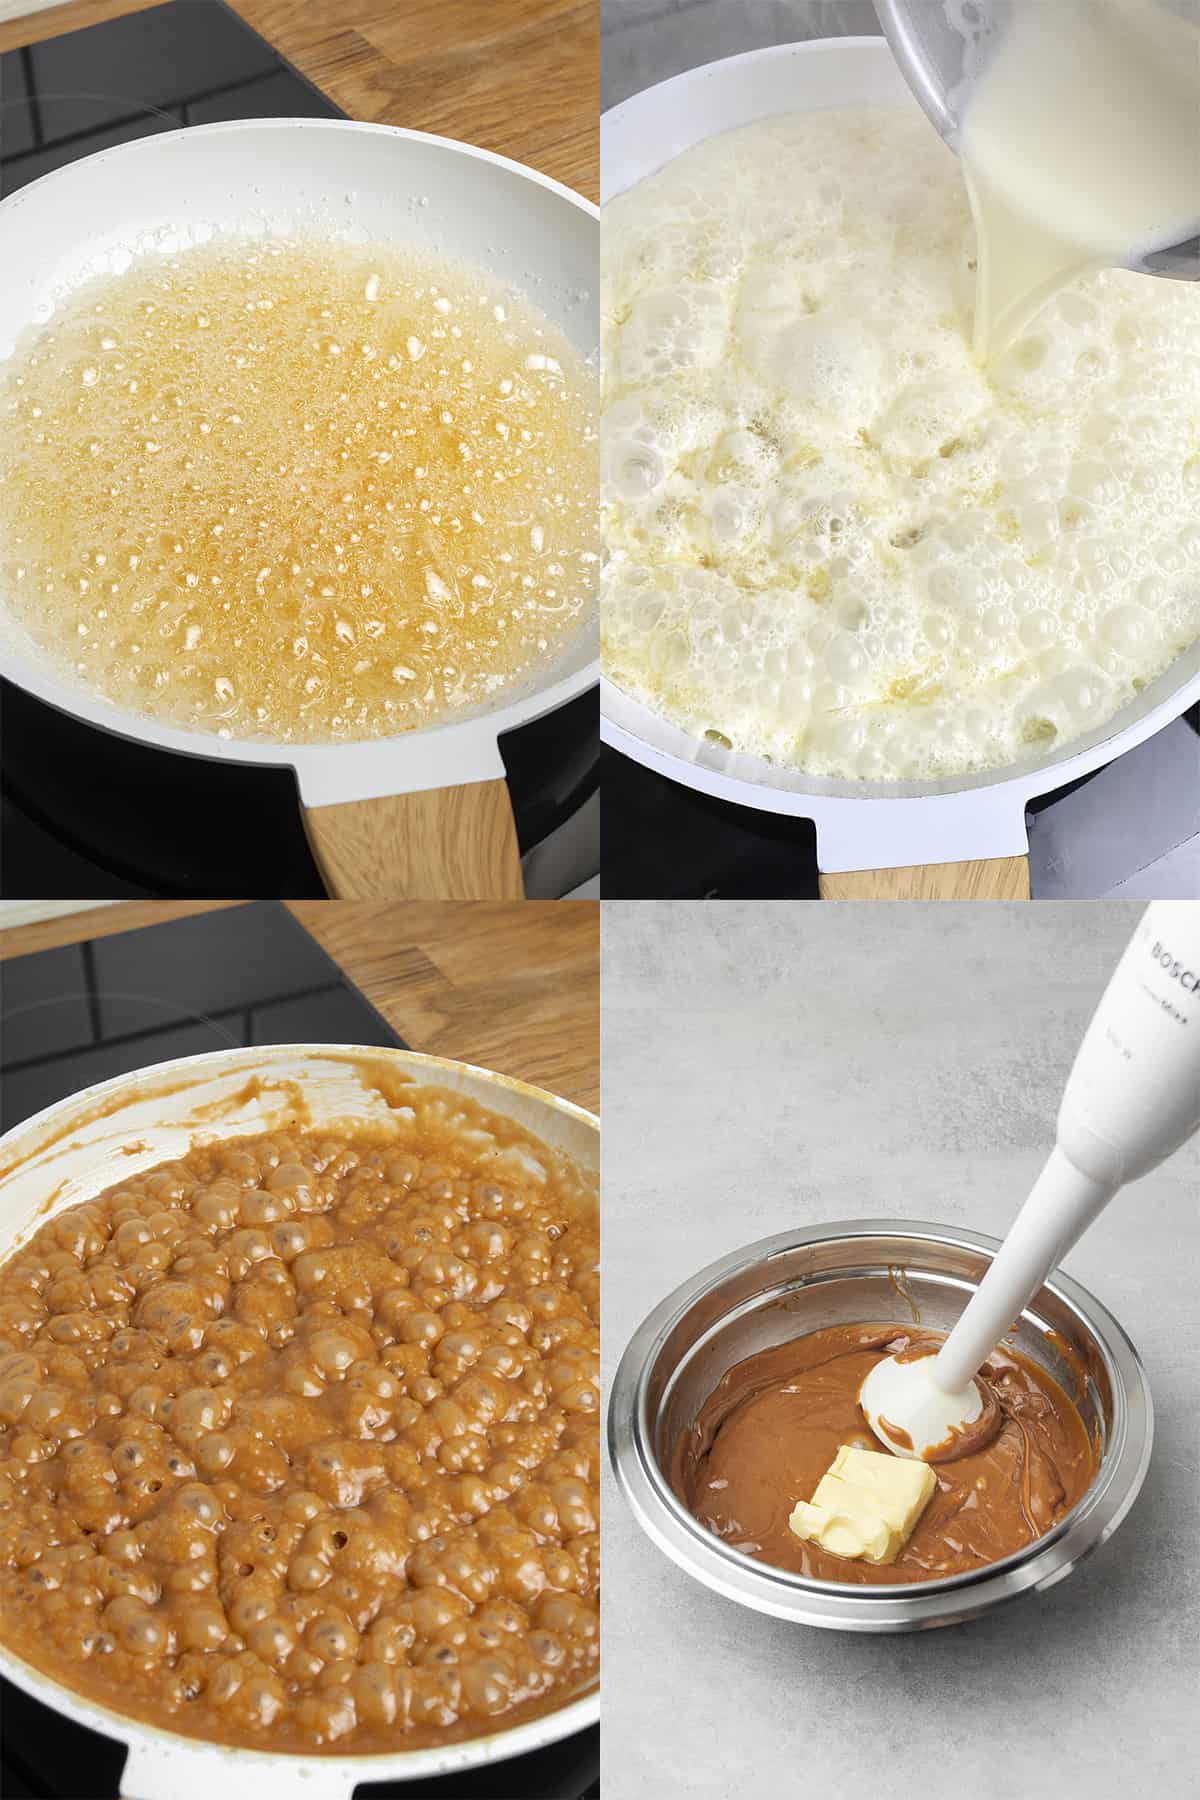 Caramel process